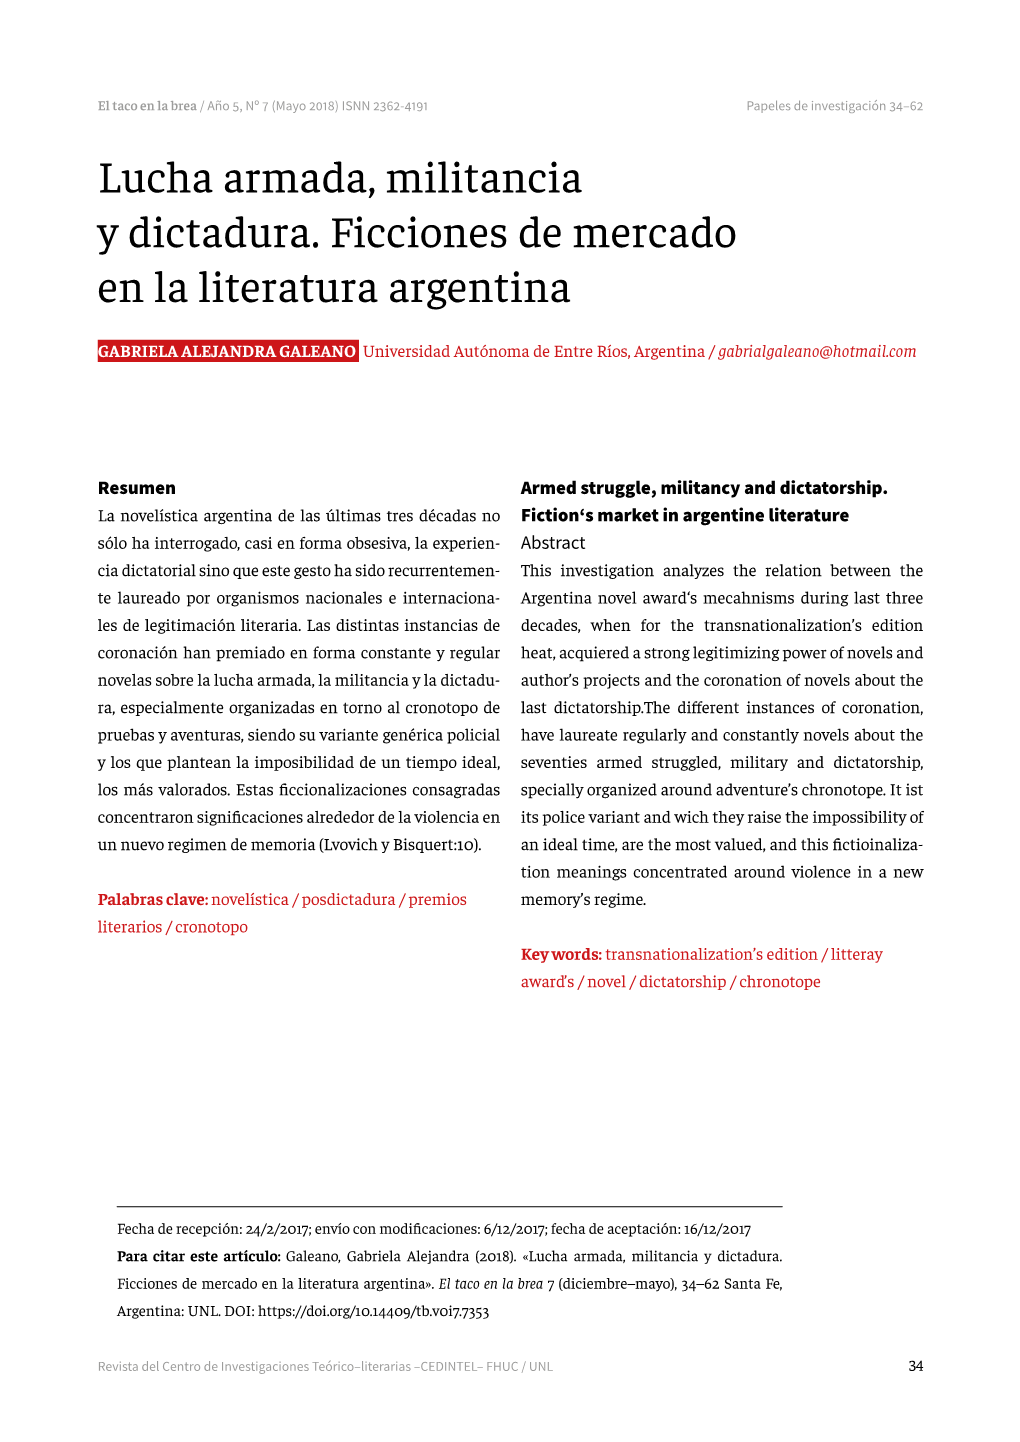 Lucha Armada, Militancia Y Dictadura. Ficciones De Mercado En La Literatura Argentina